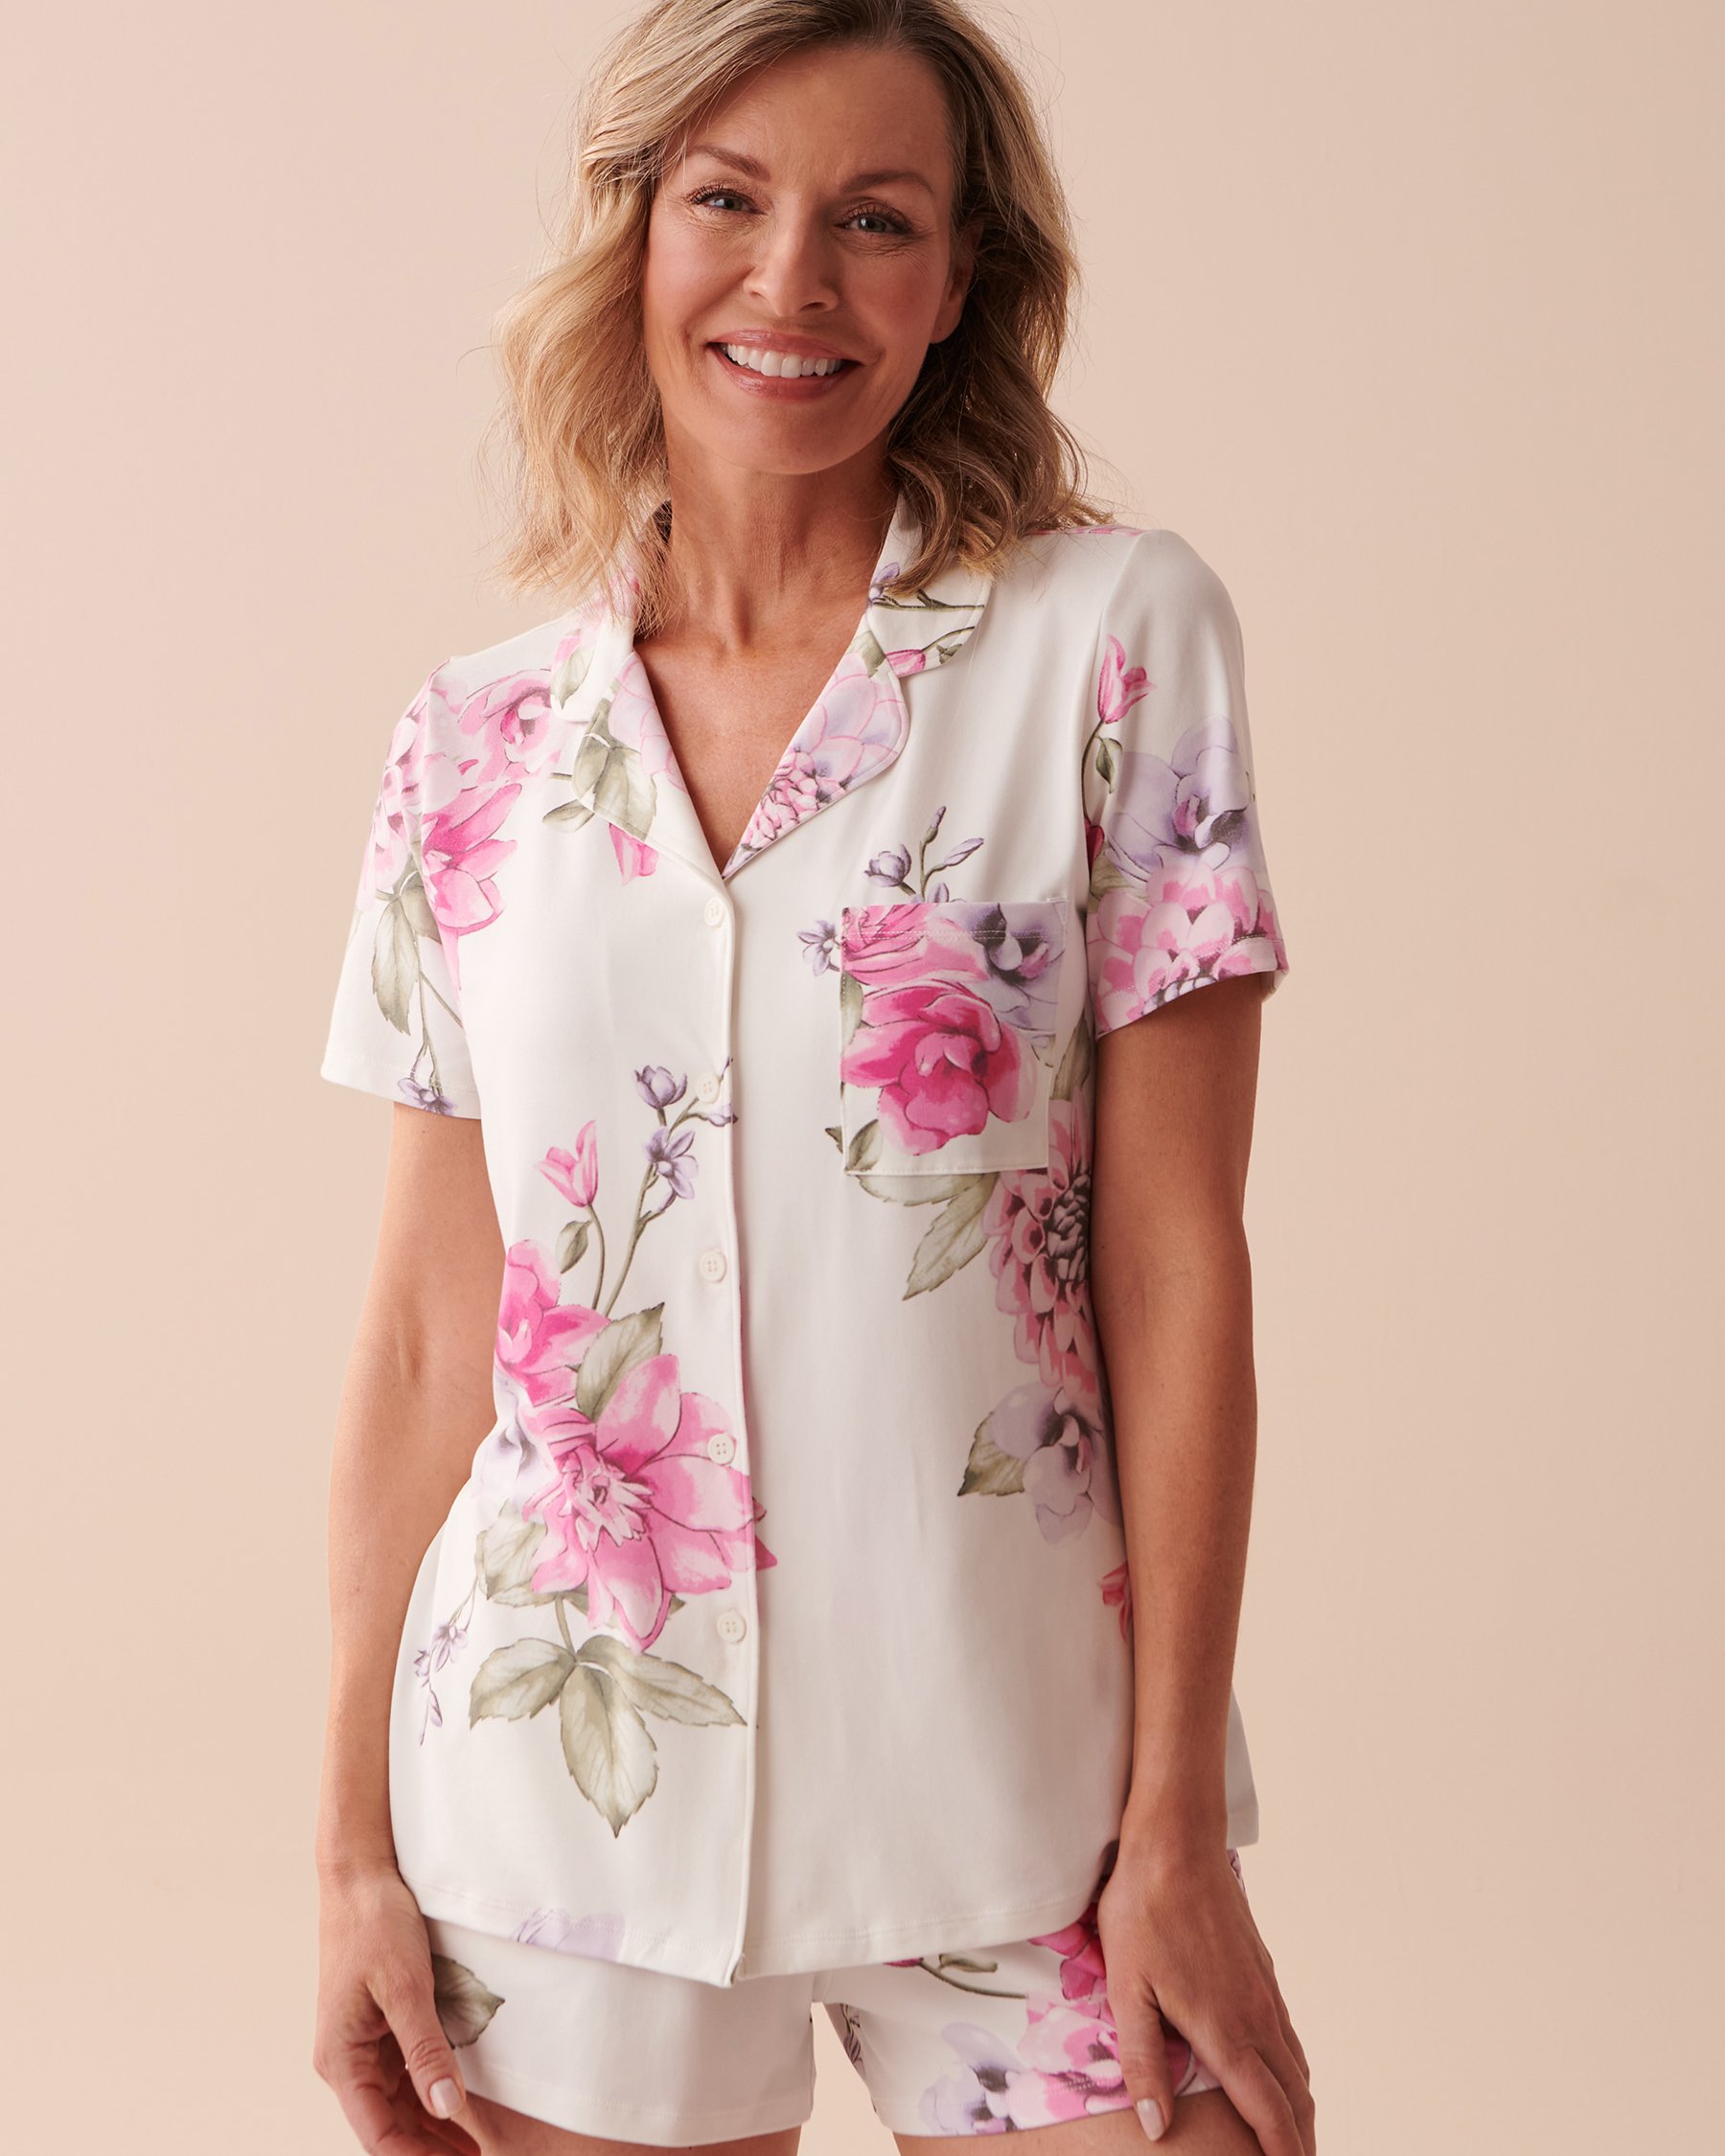 LA VIE EN ROSE Floral Super Soft Button-down Shirt Peonies Garden 40100538 - View1